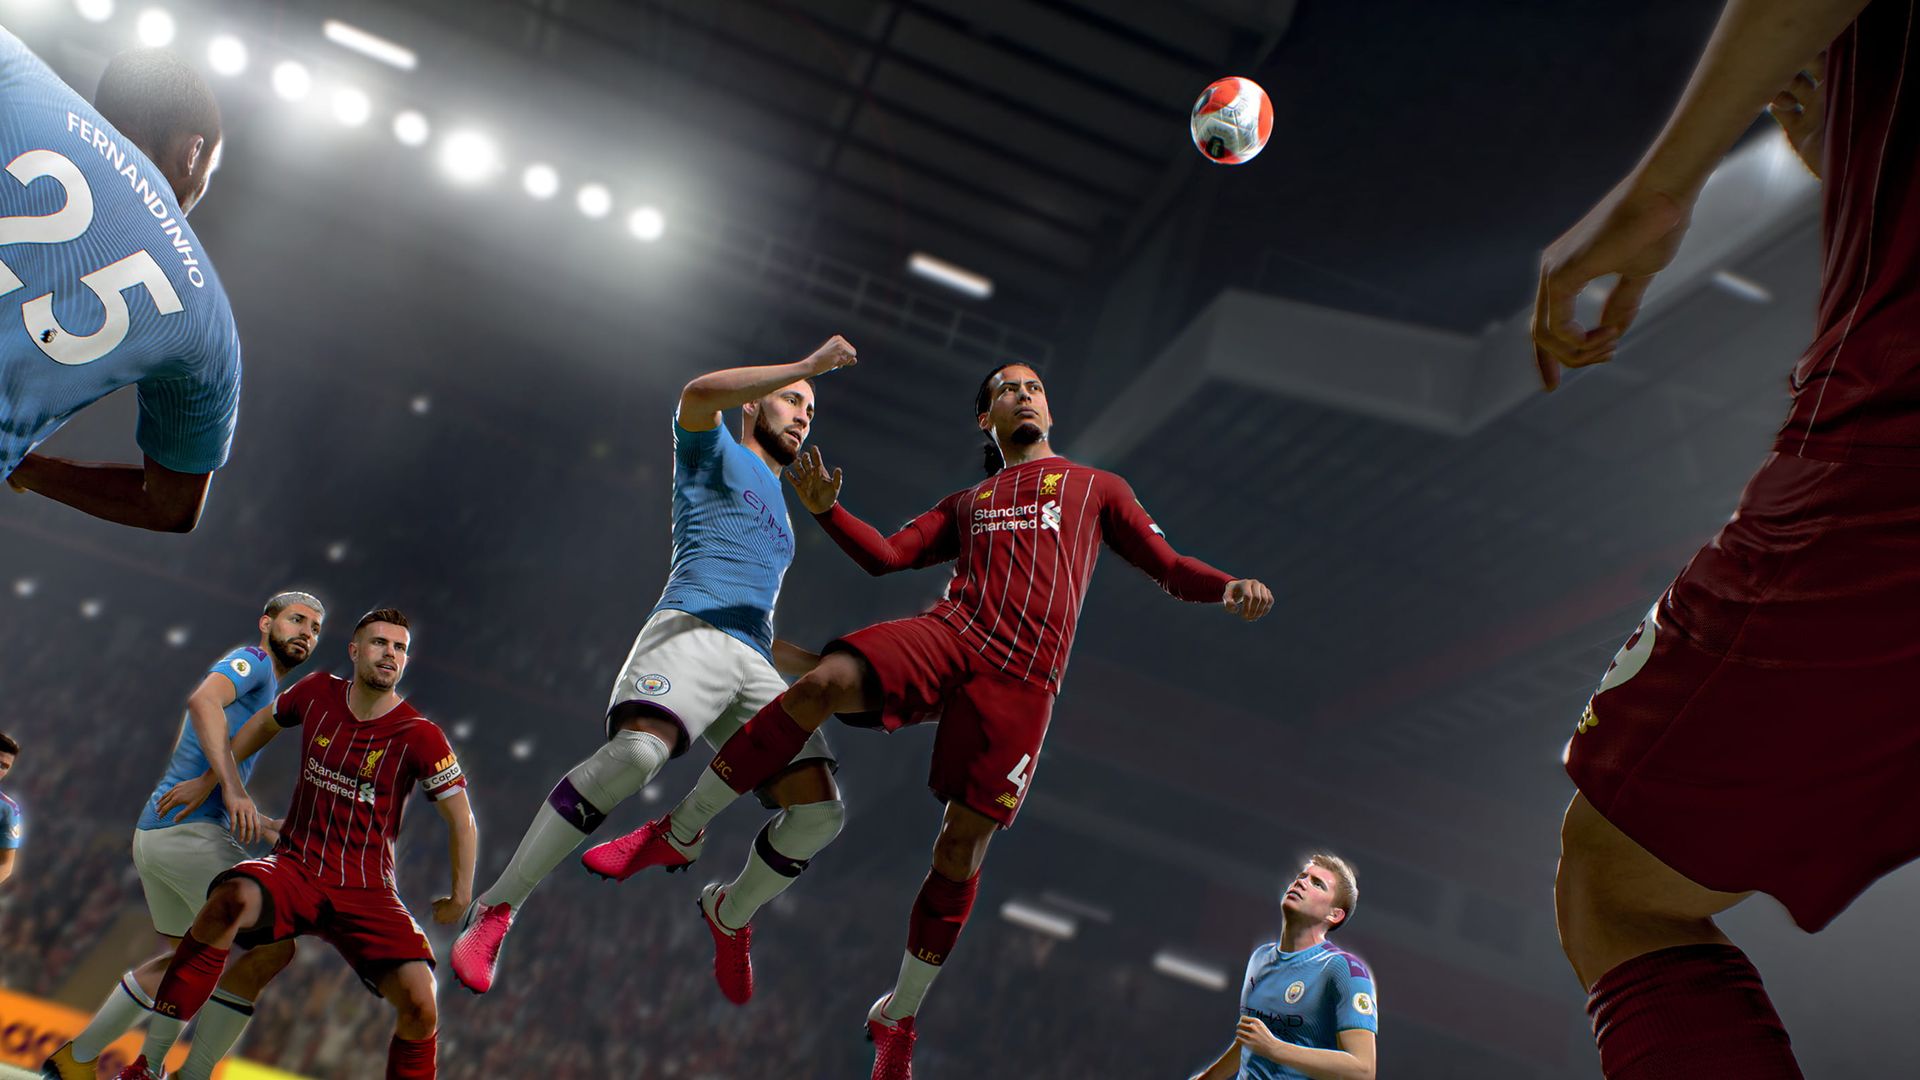 Enfin, une première vidéo de gameplay de FIFA 21